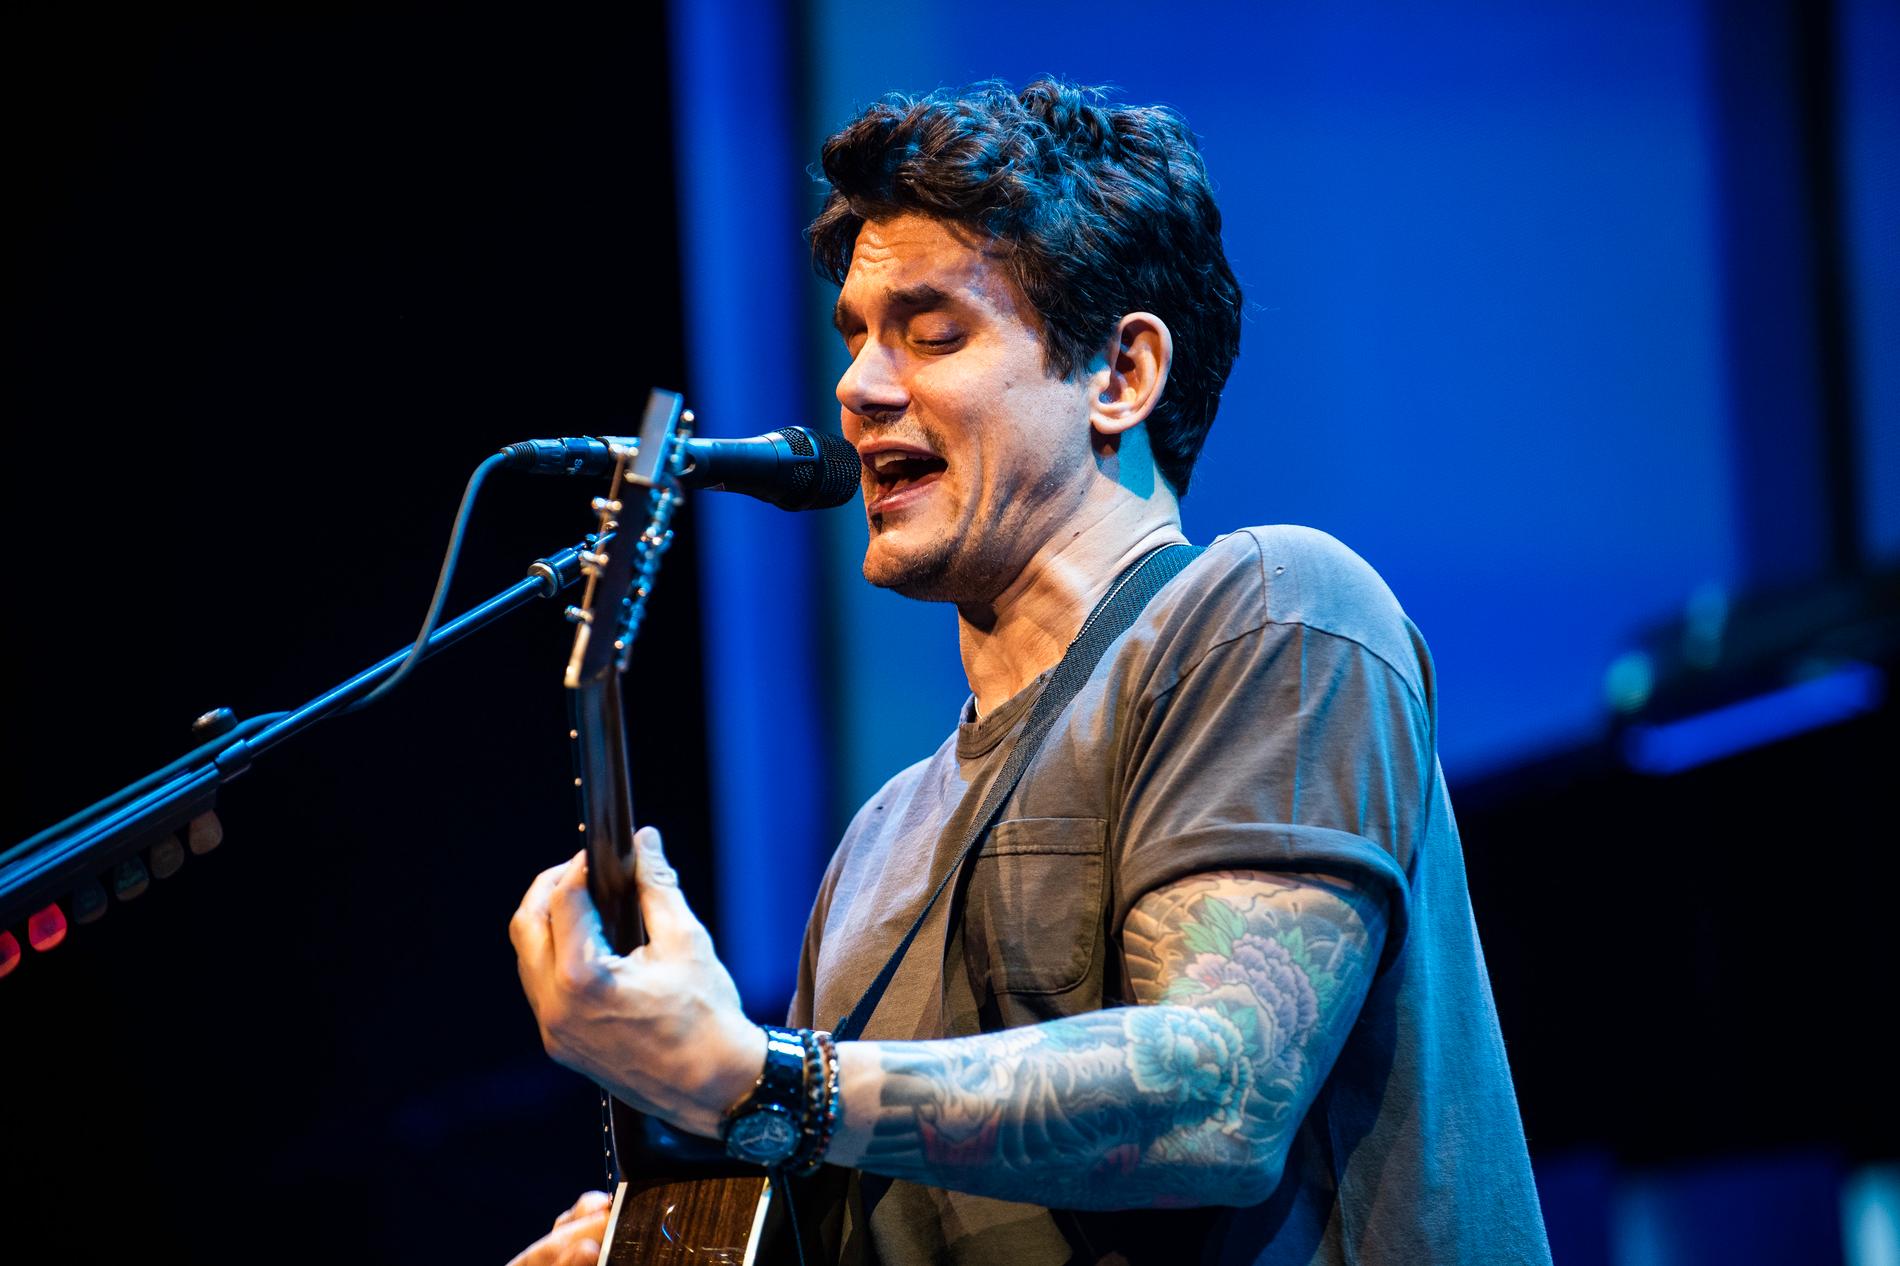 John Mayer ger konsert på Tele2 Arena i mars nästa år.